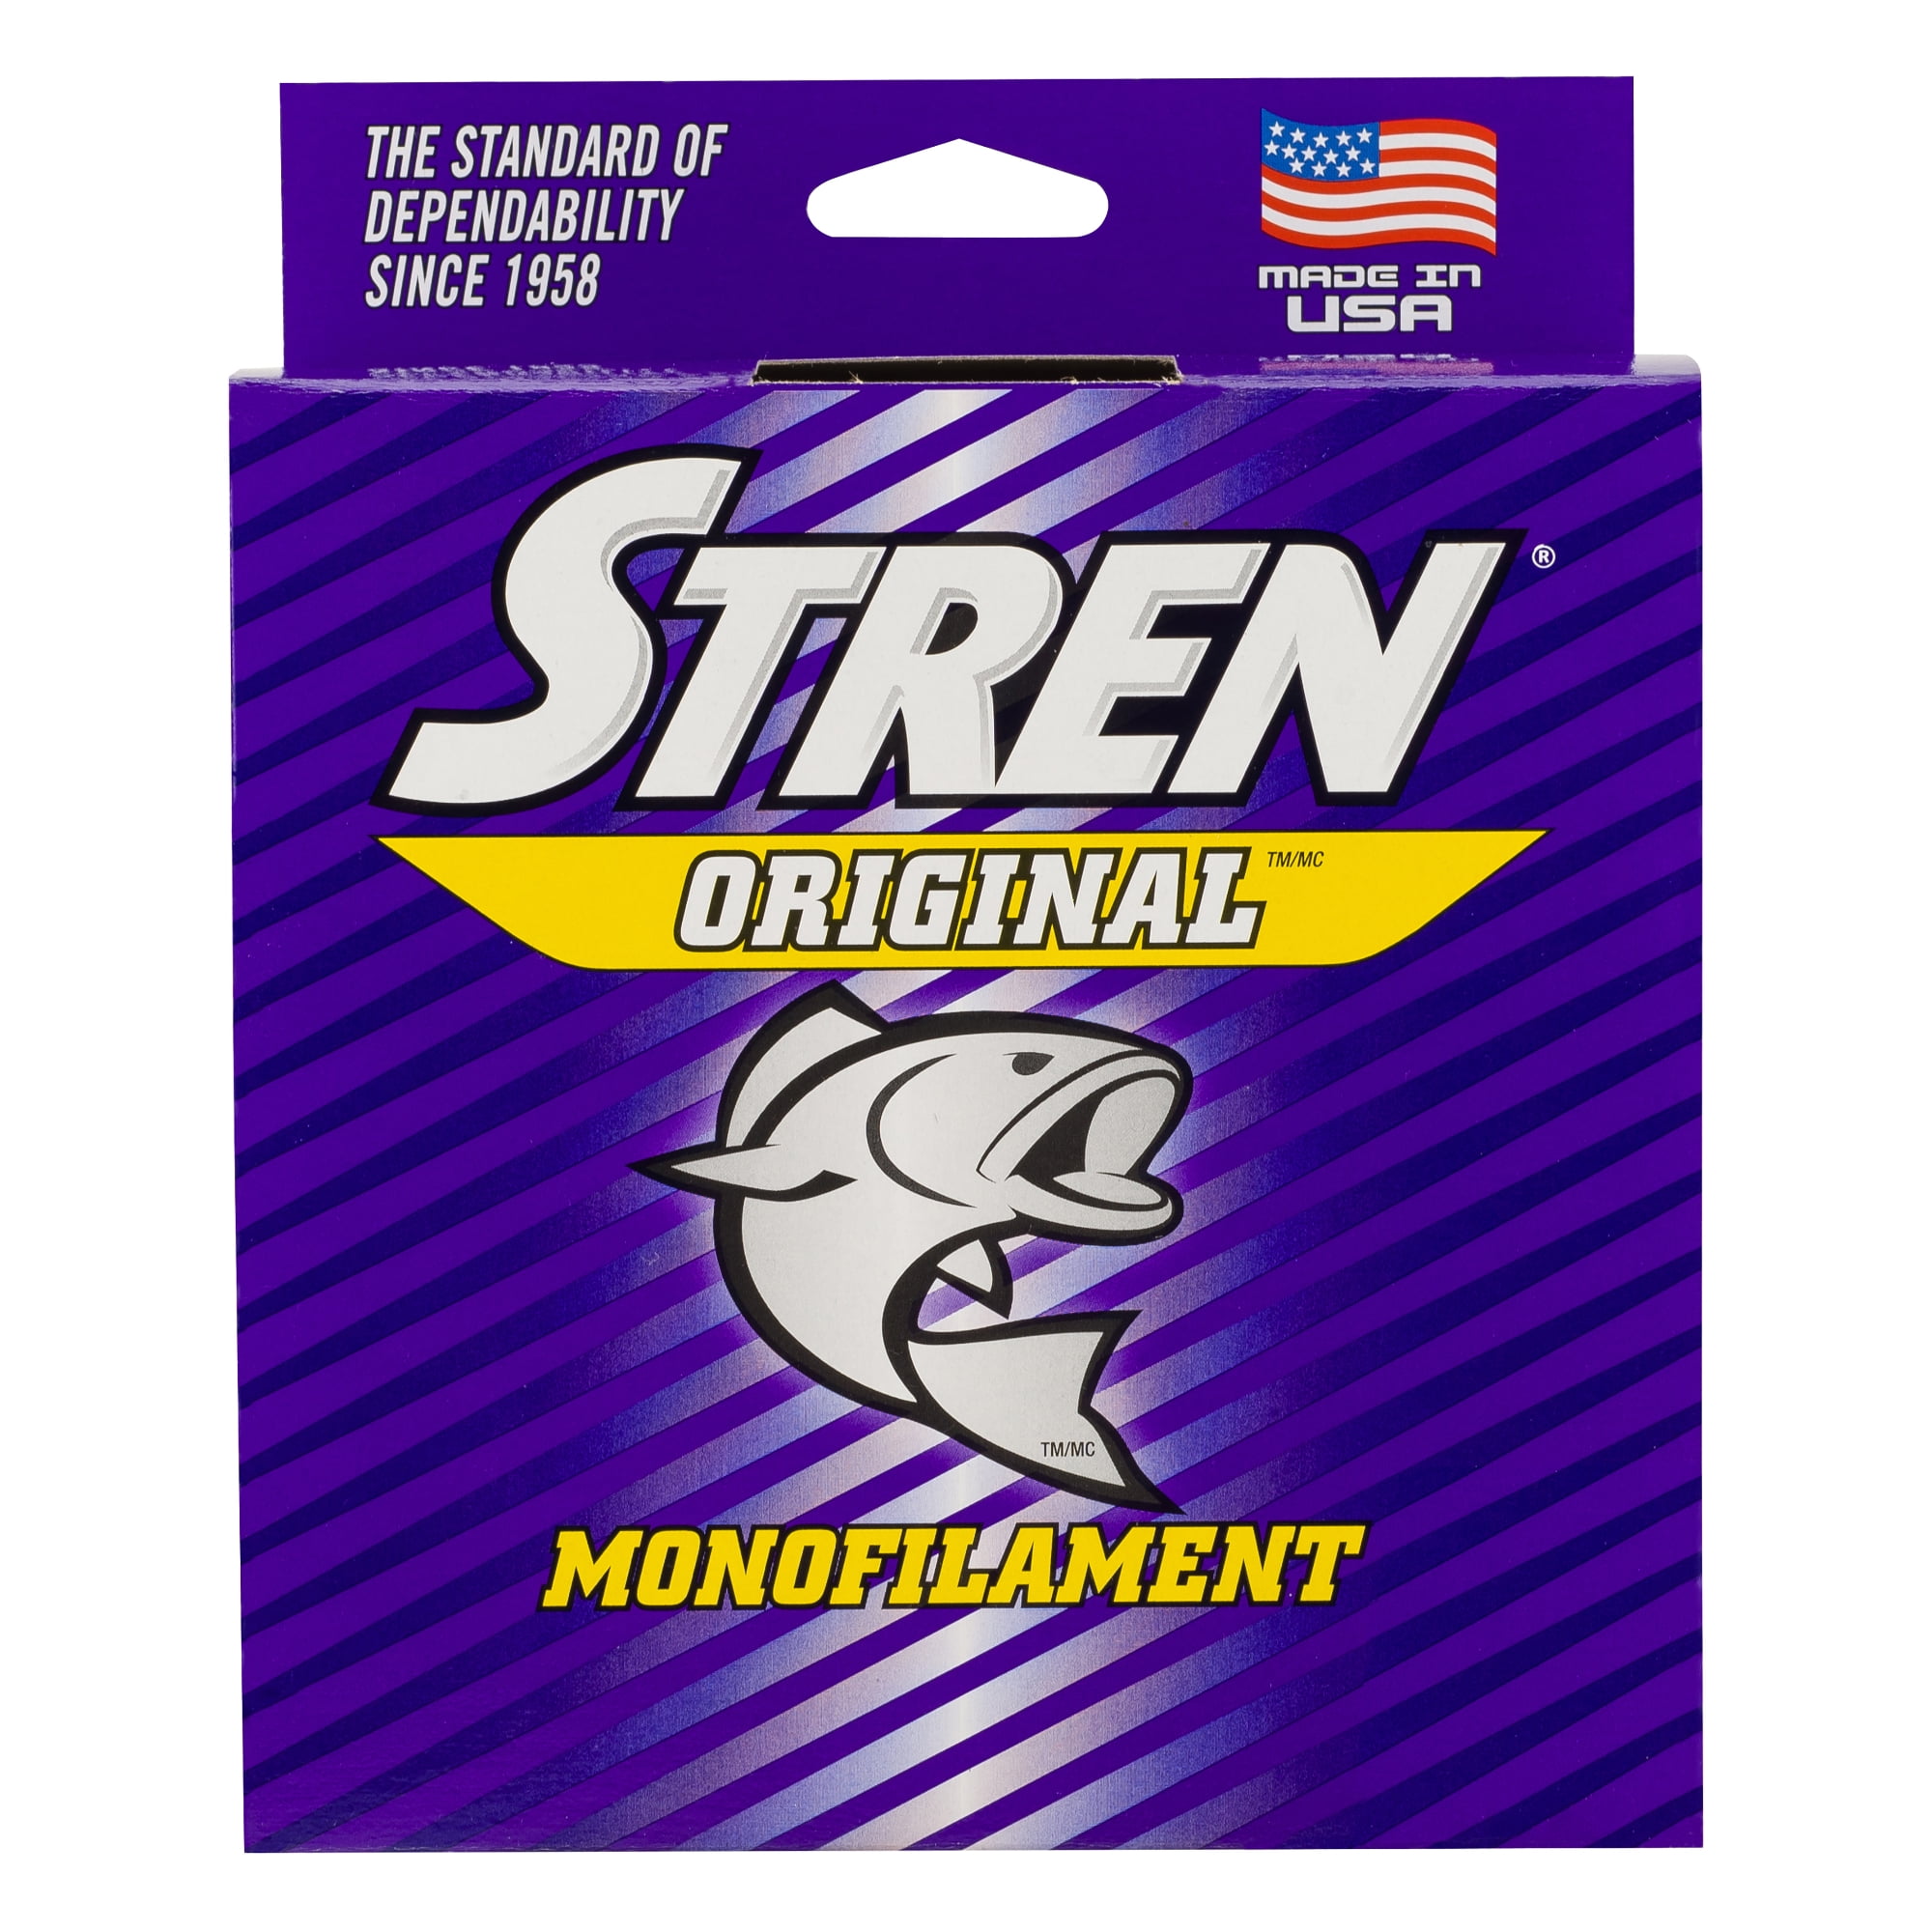 Stren Original®, Hi-Vis Gold, 6lb  2.7kg Monofilament Fishing Line 